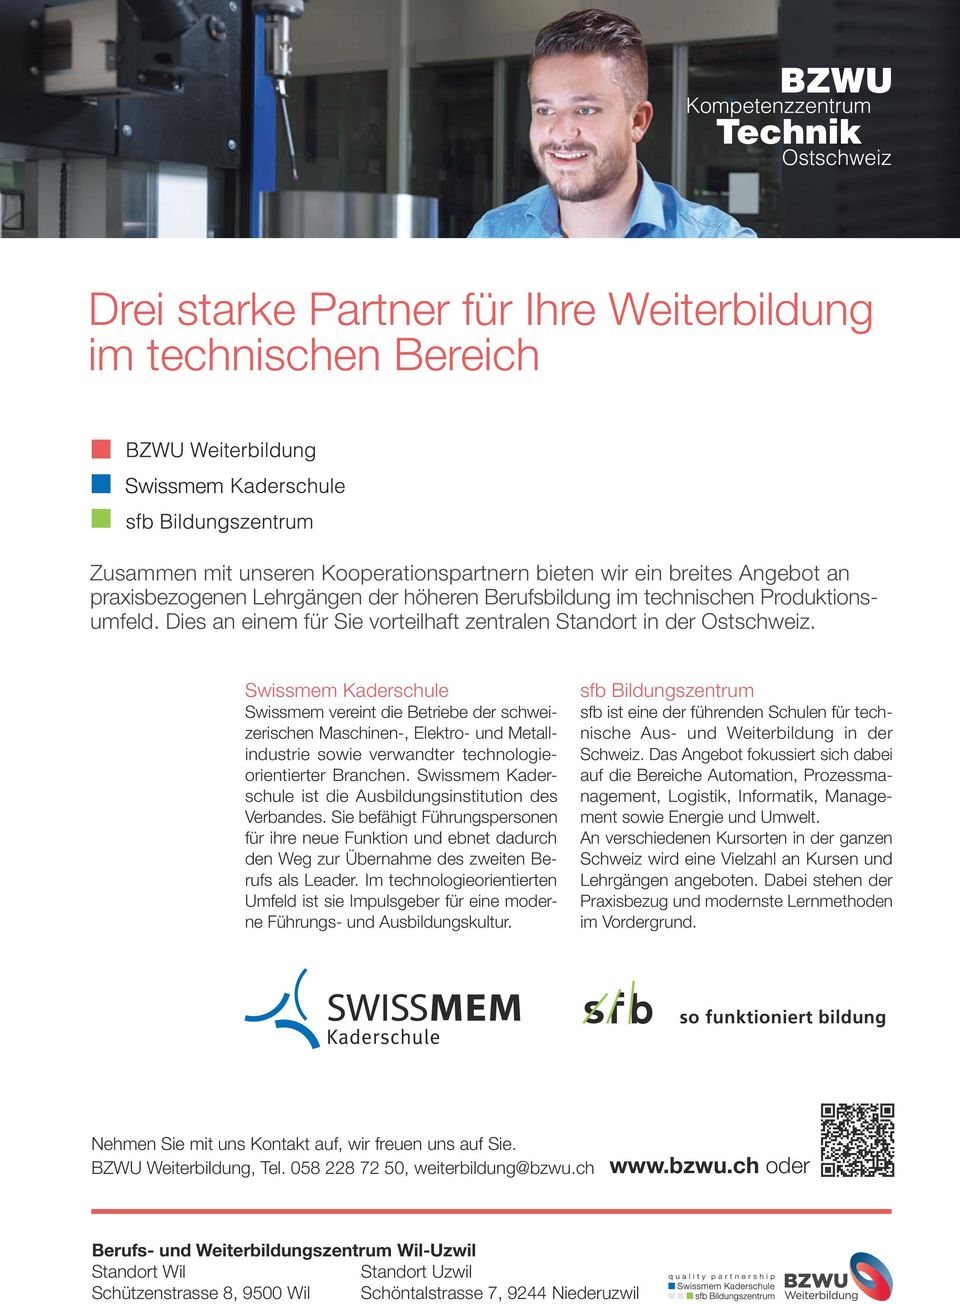 Swissmem Kaderschule Swissmem vereint die Betriebe der schweizerischen Maschinen-, Elektro- und Metallindustrie sowie verwandter technologieorientierter Branchen.